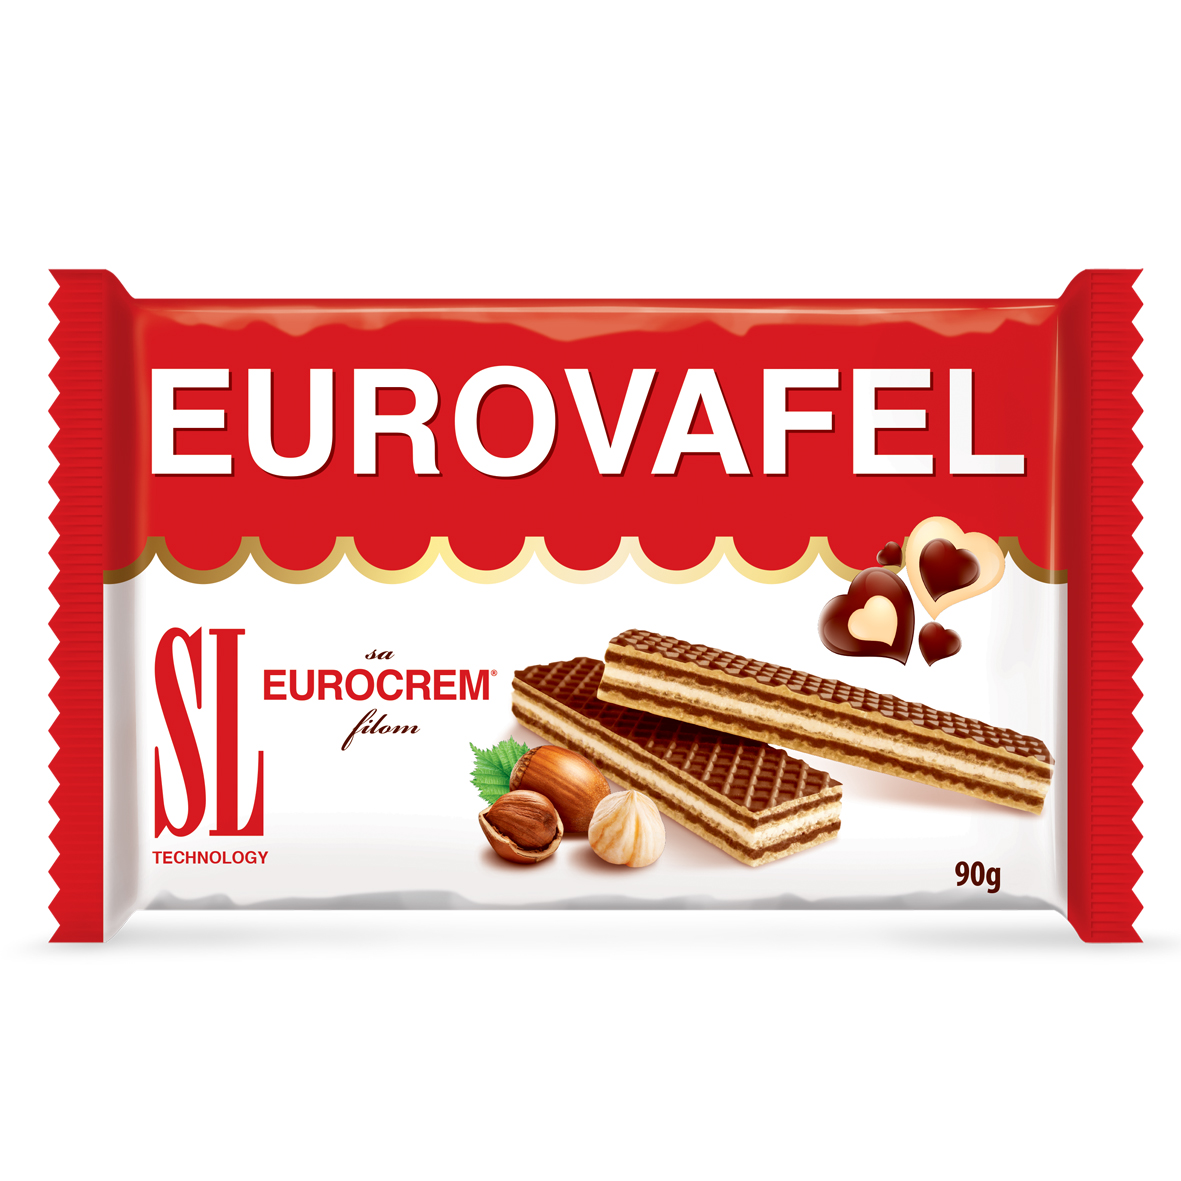 Eurovafel 90g